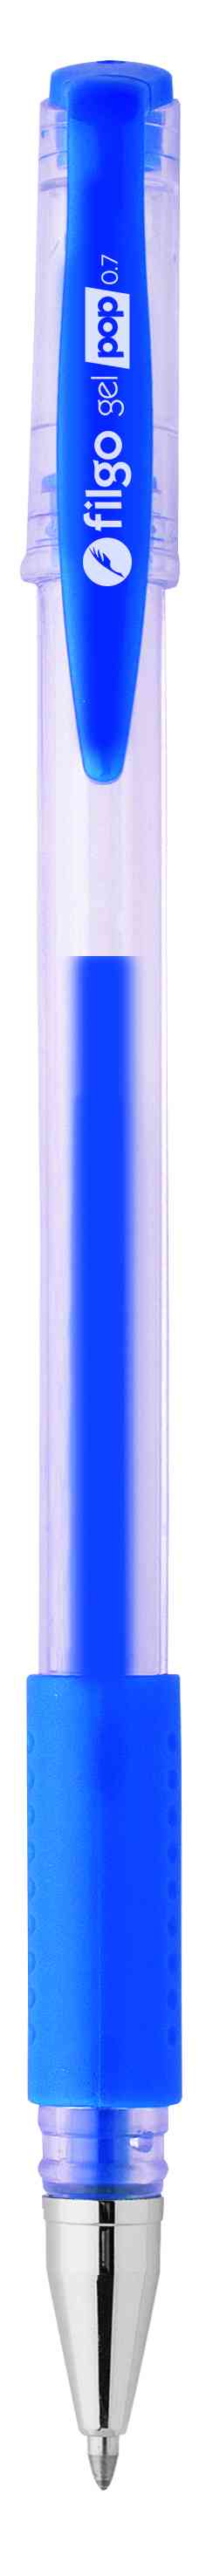 Lápiz gel azul 1.0mm Filgo